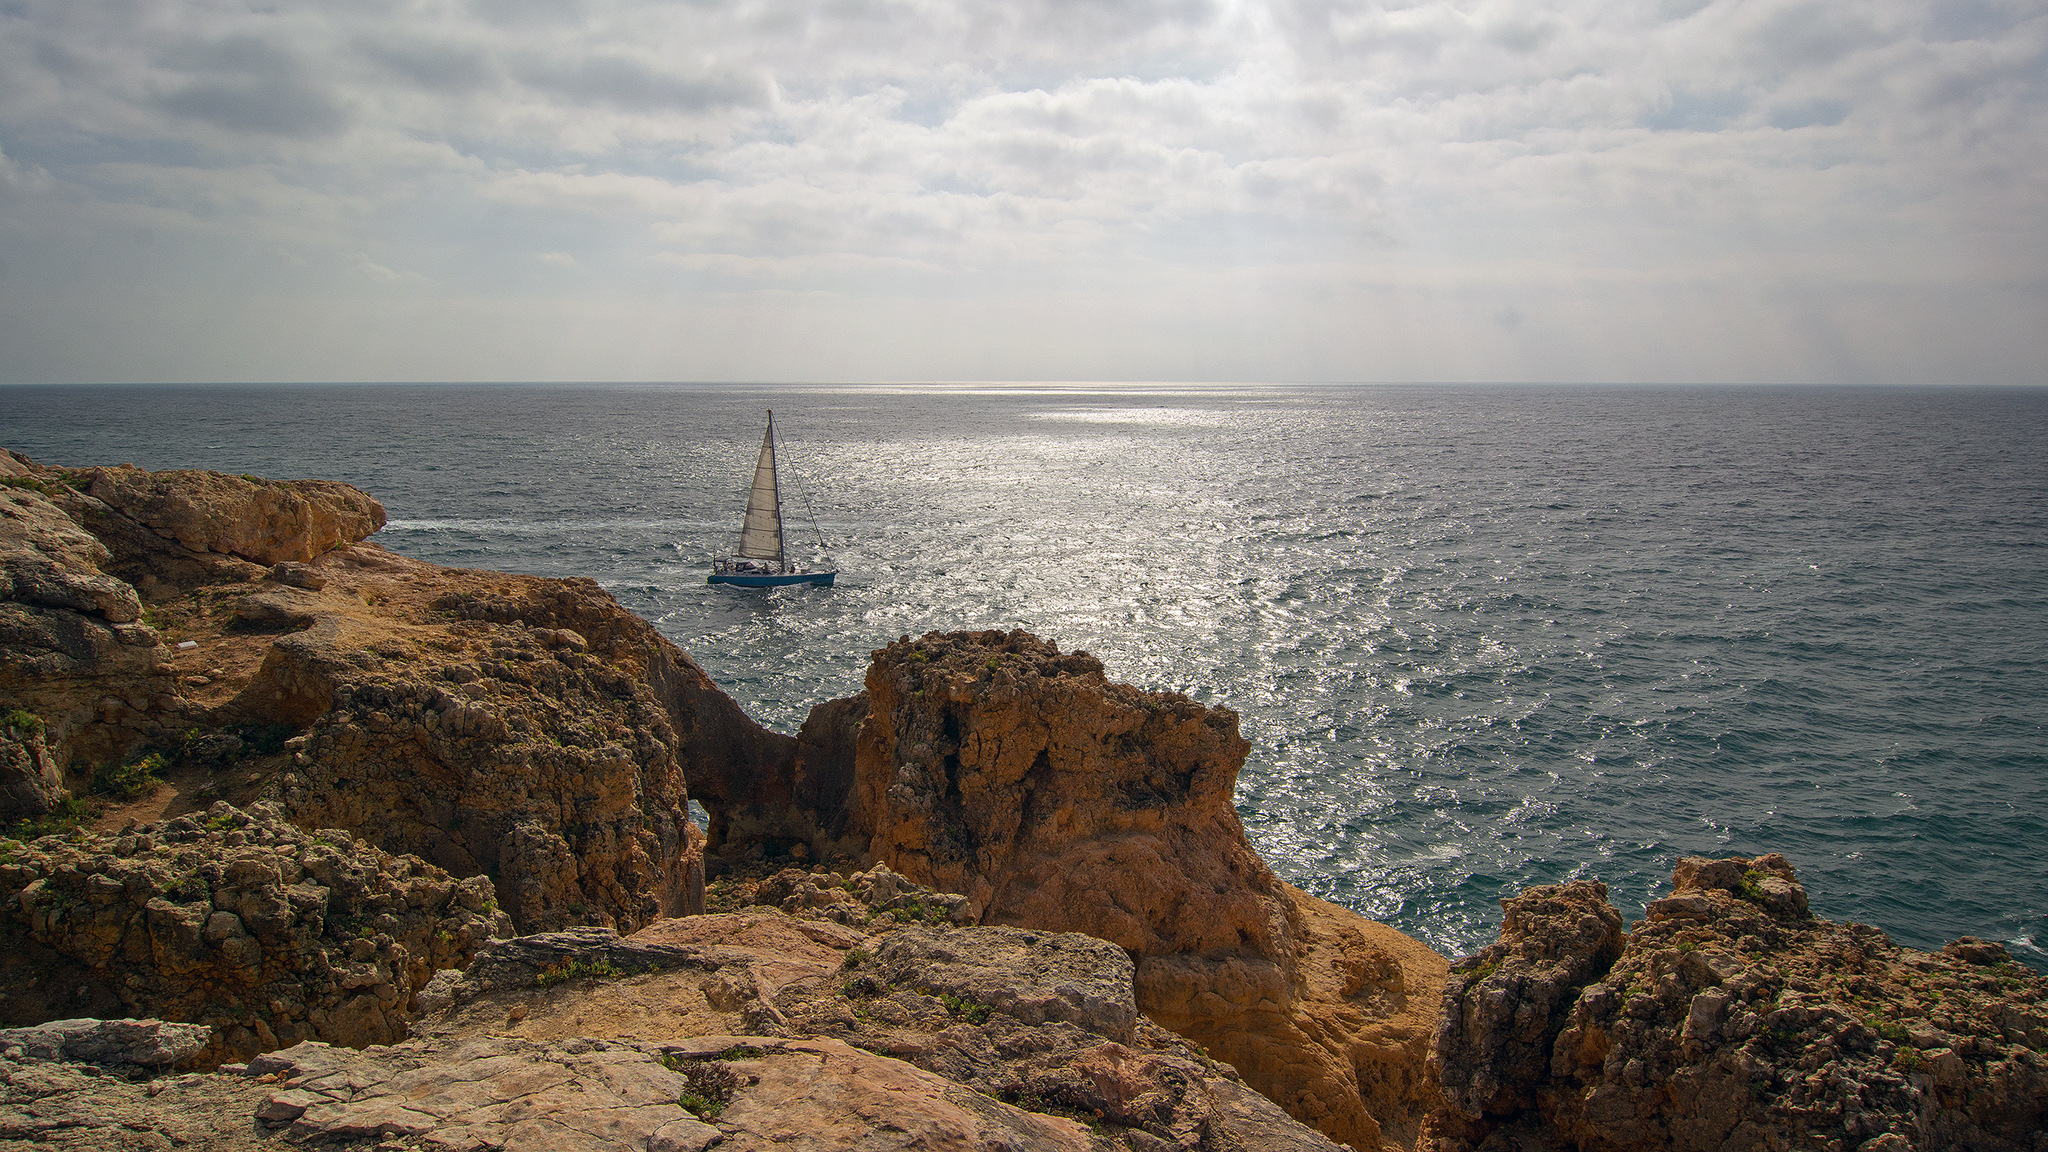 Sailing along the Portuguese coast...